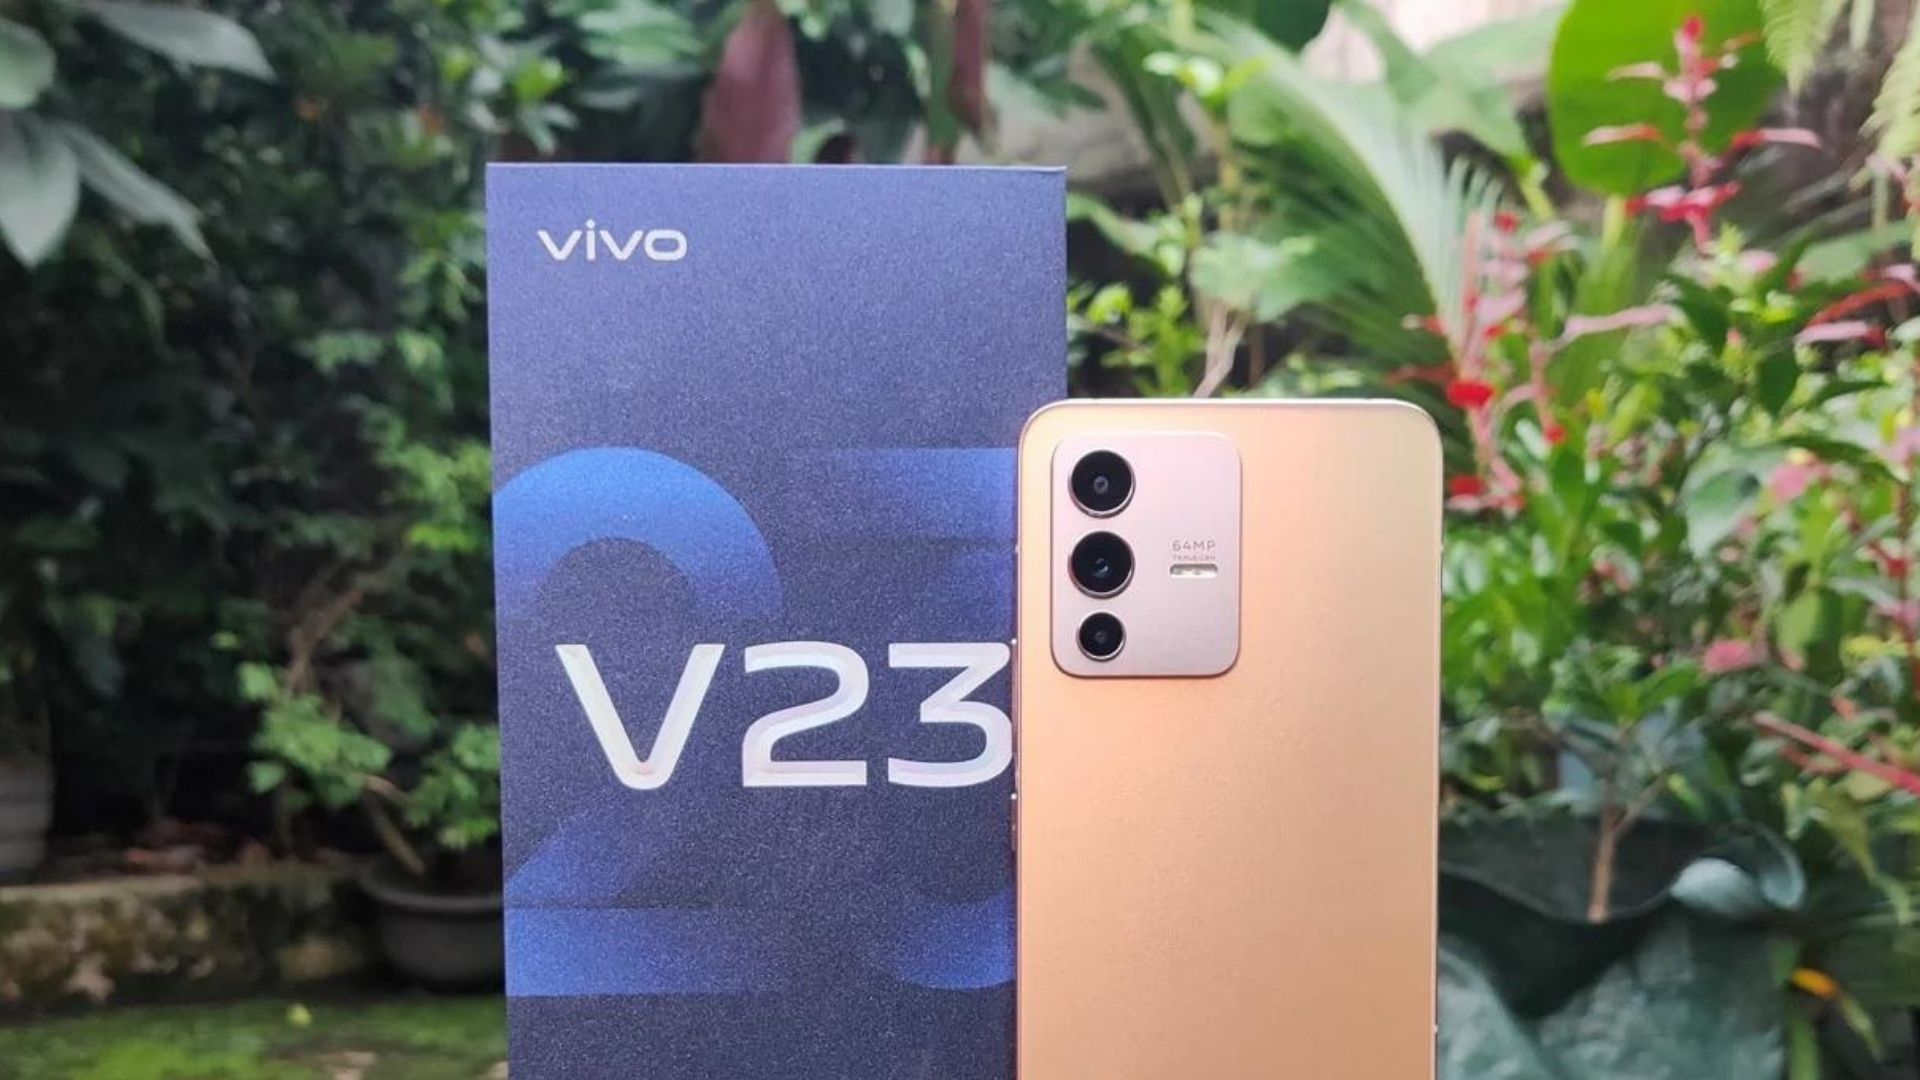 Harga Vivo V23 5 Indonesia, Review dan Spesifikasi Lengkap